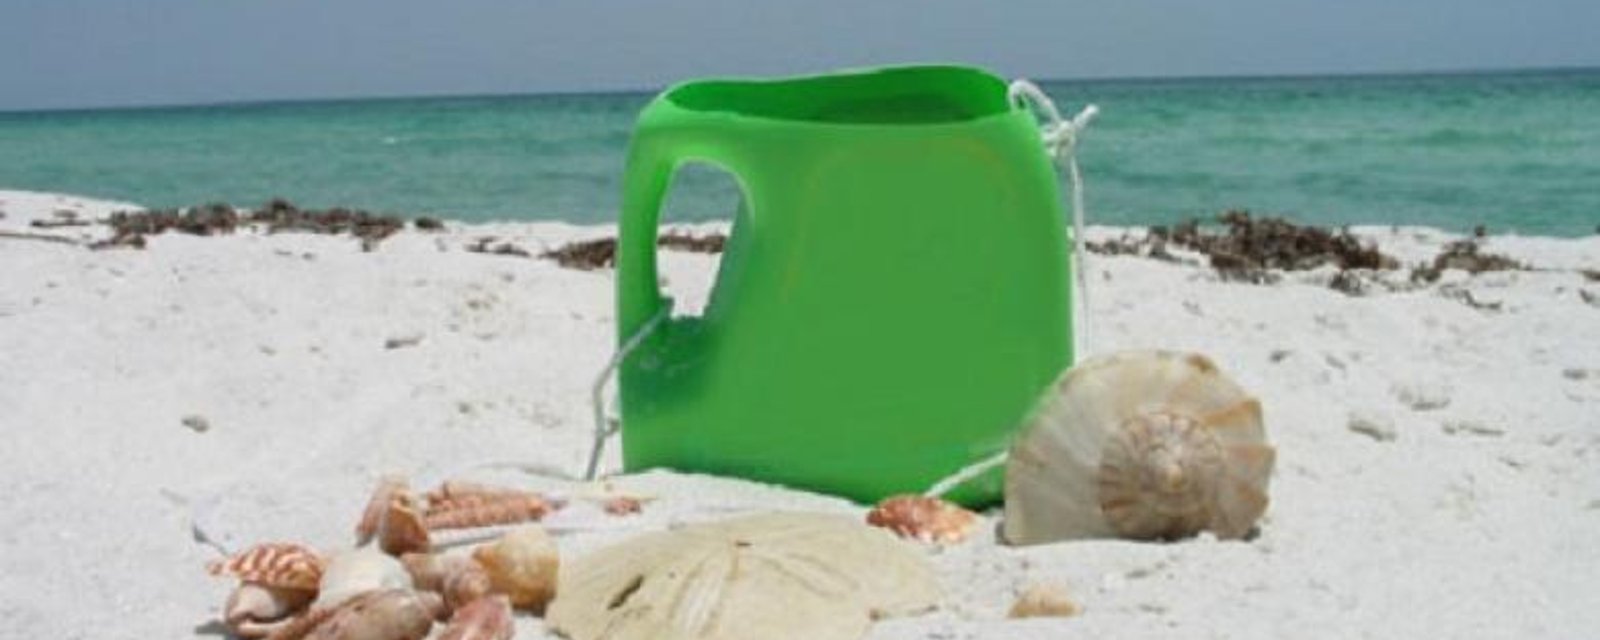 Récupérer les bouteilles de détergent pour jouer à la plage! 4 idées à voir!